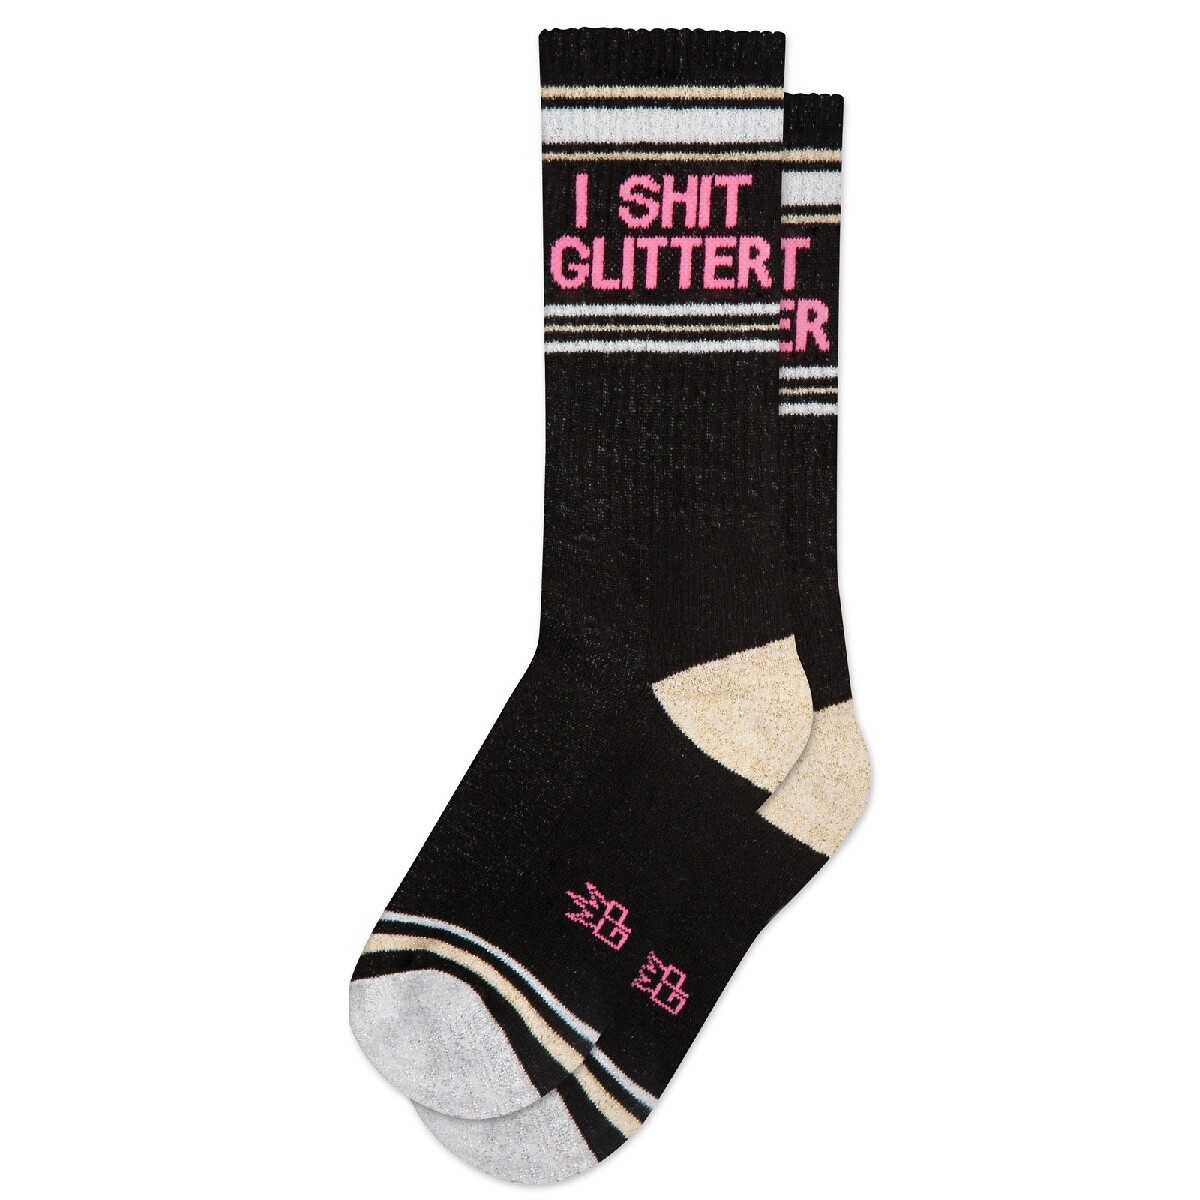 Shit Glitter Socks